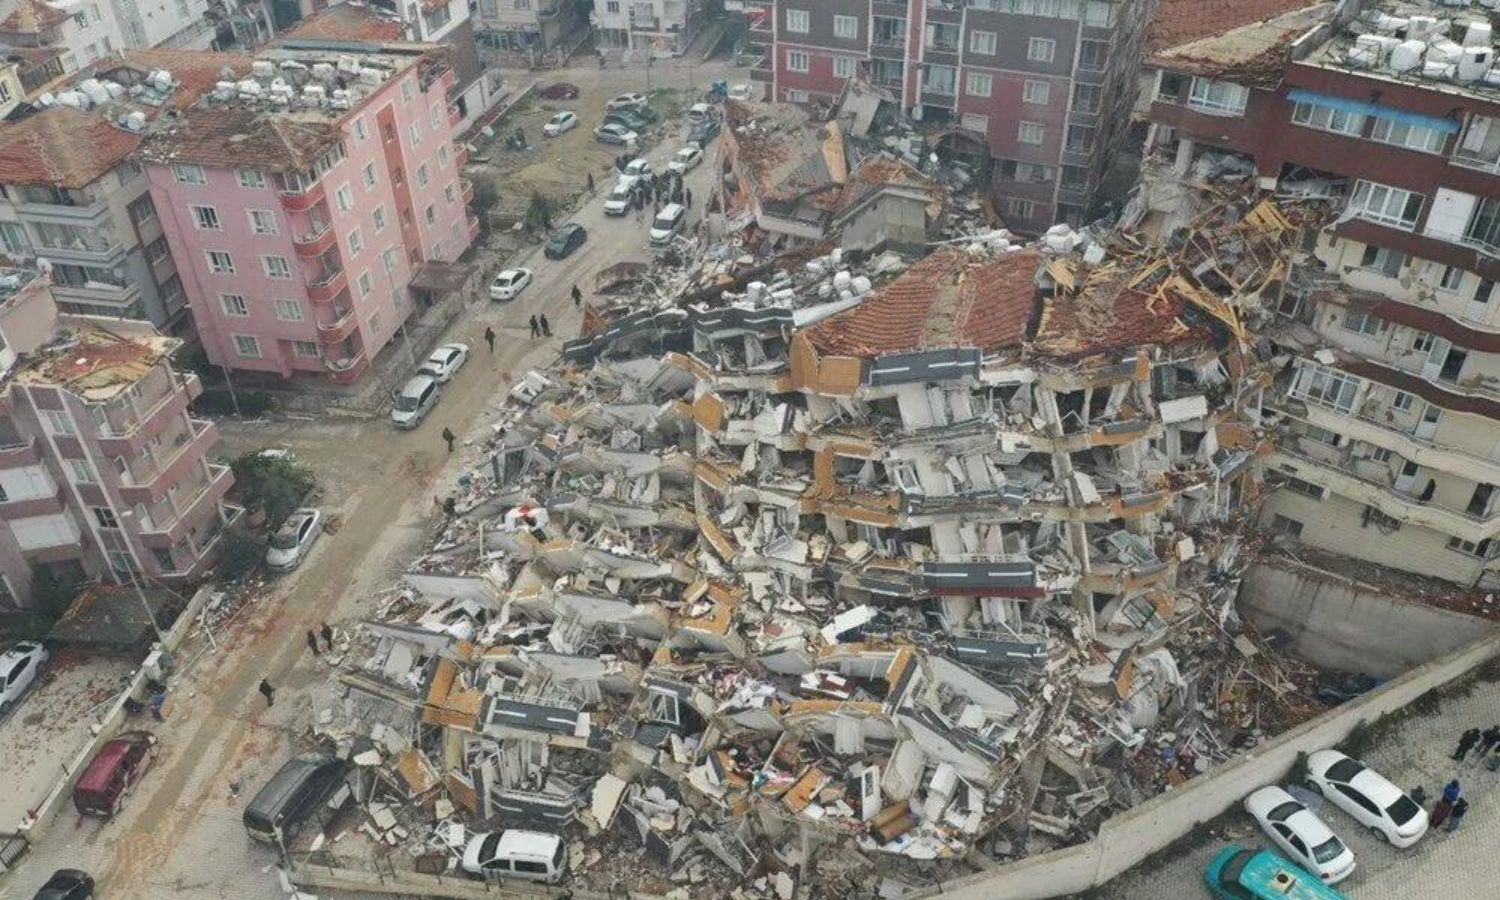 ركام وأبنية منهارة في منطقة بازارجيك" بولاية كهرمان مرعش جراء زلزال ضرب عدة ولايات جنوبي تركيا وشمالي سوريا- 10 شباط 2